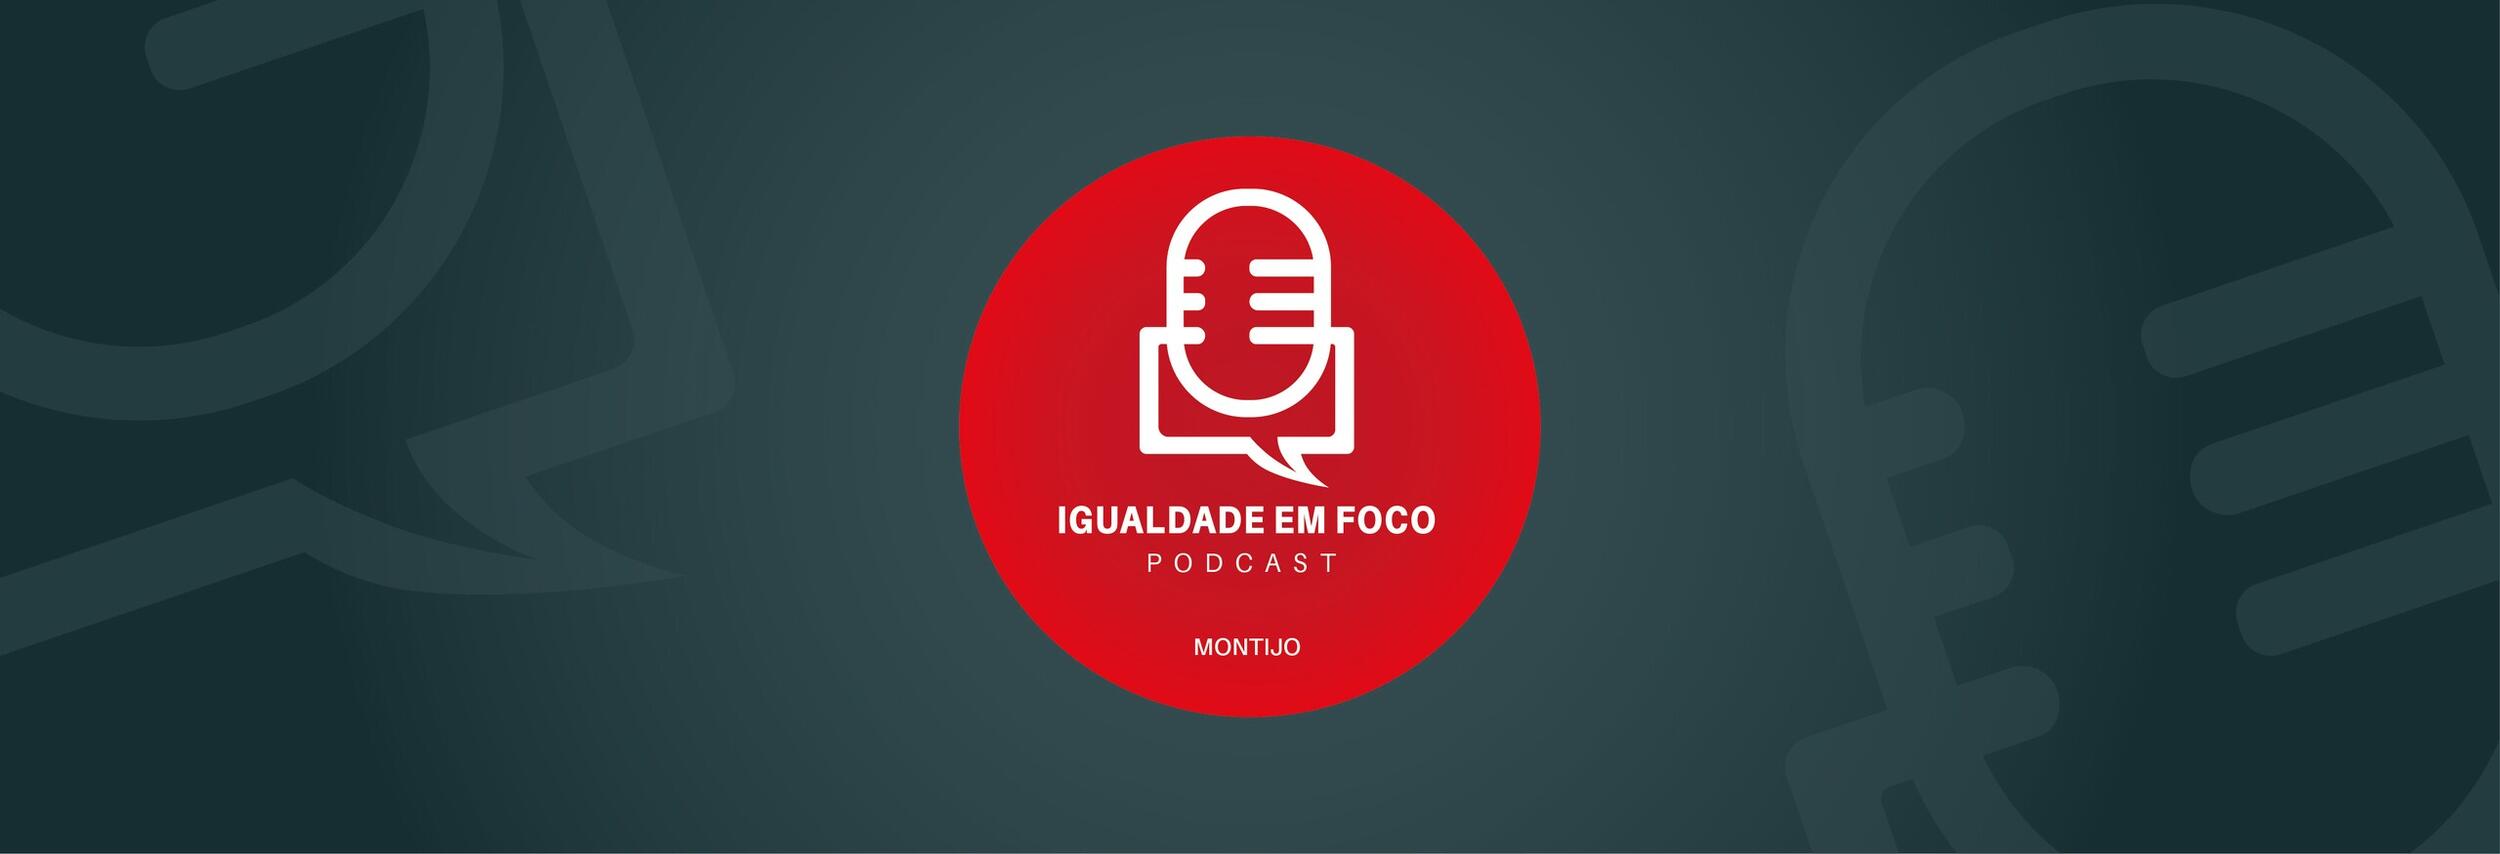  EP7 Podcast Igualdade em Foco - Especial 25 de abril coim Manuela Tavares